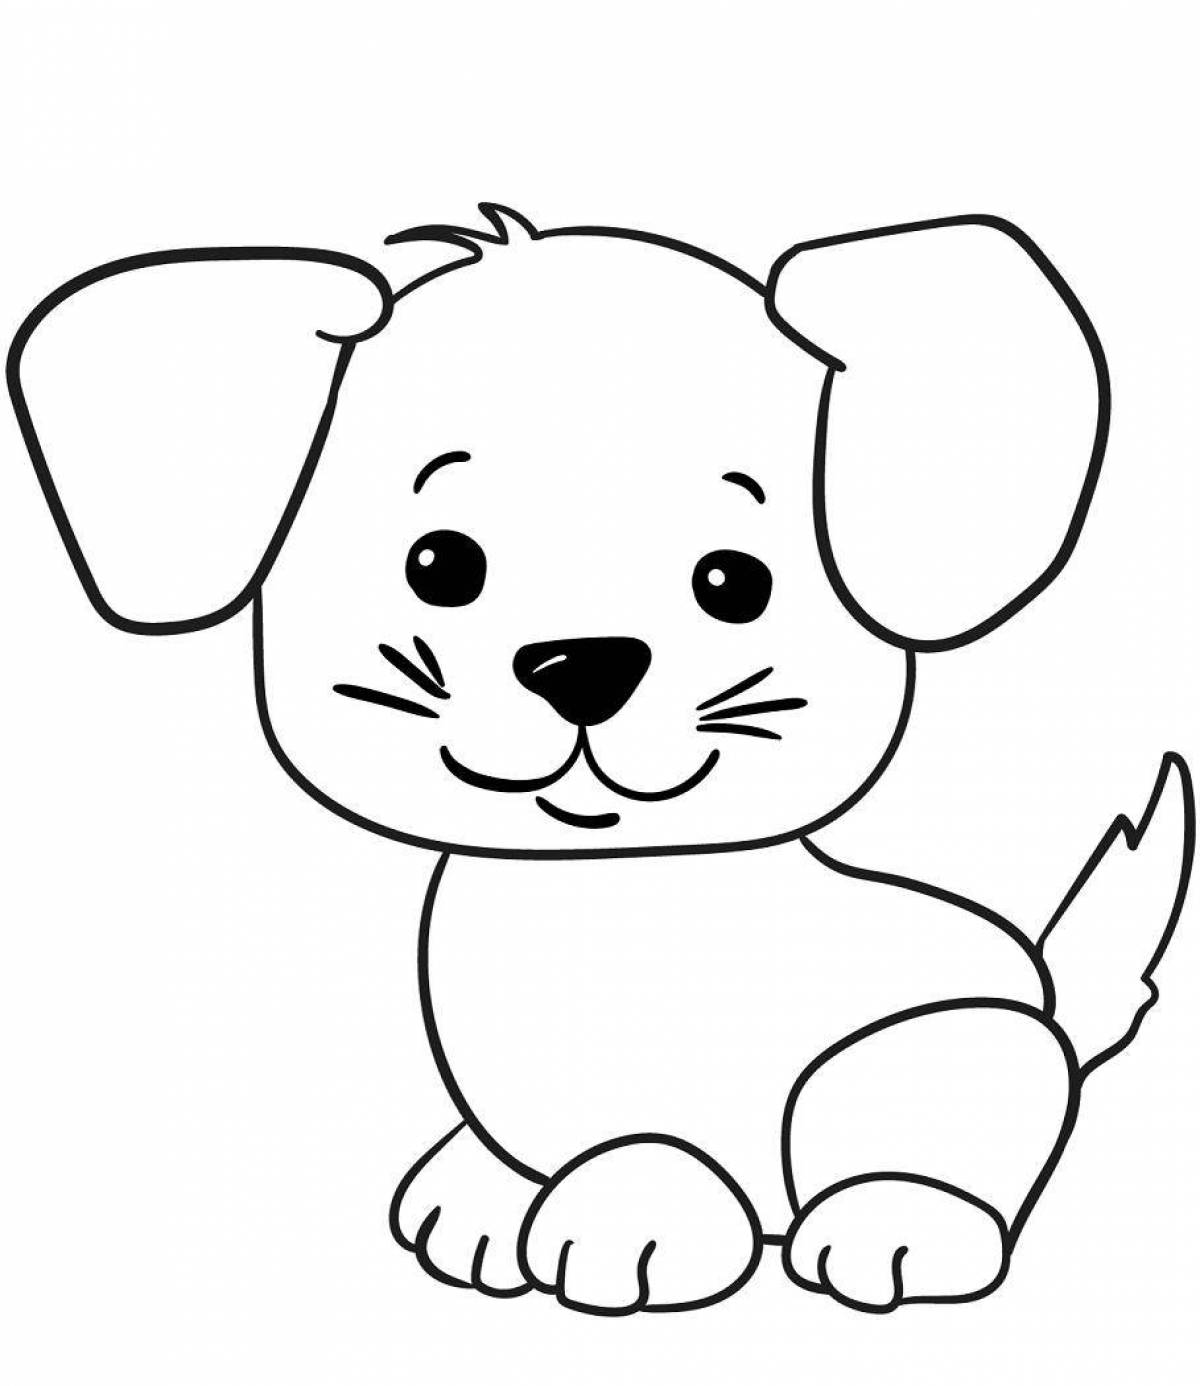 Привлекательная собачка-раскраска для детей 4-5 лет